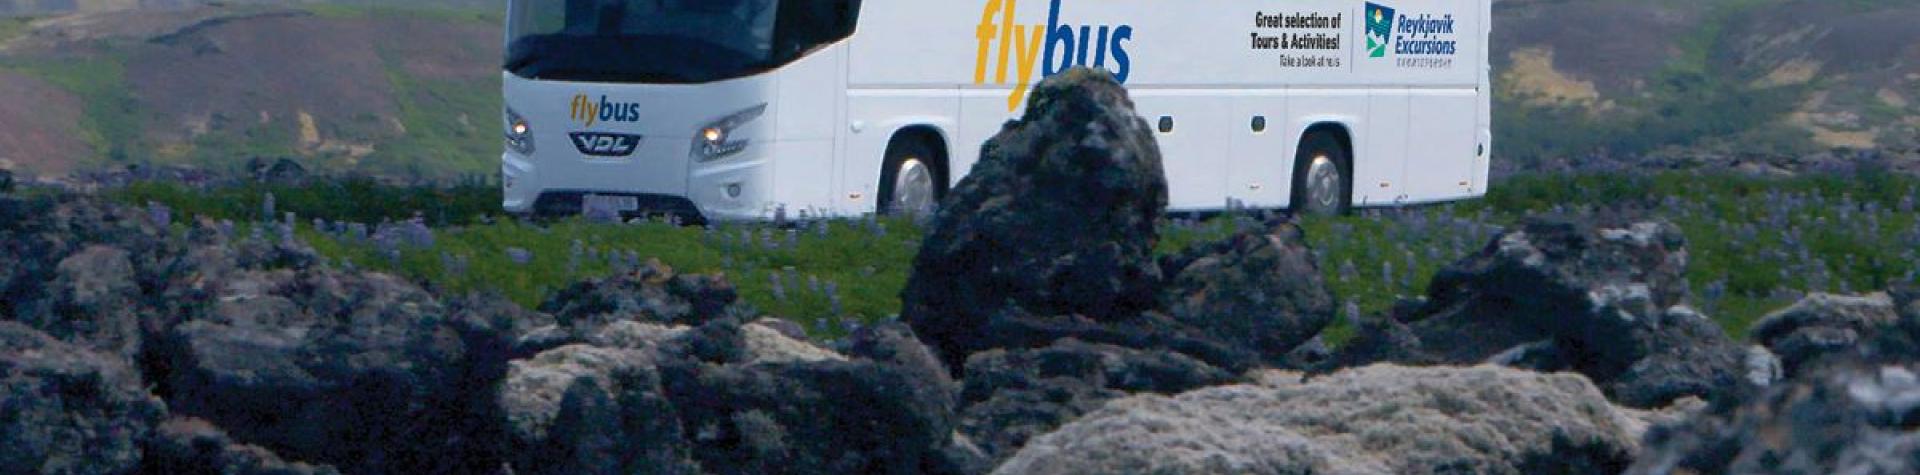 Flybuss, Keflavik flyplass - Hotell i Reykjavik (AB60)